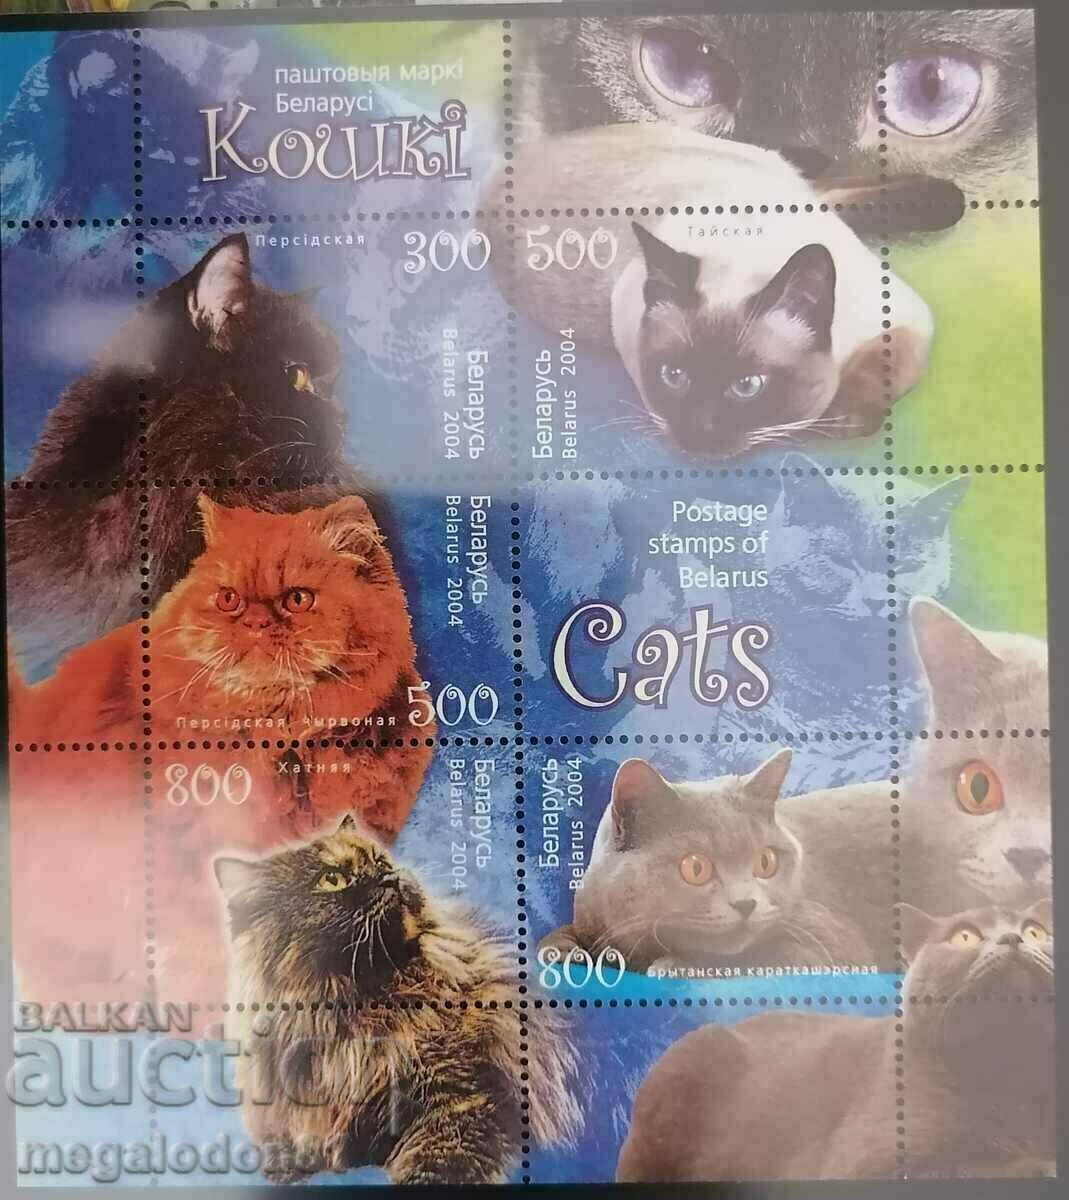 Belarus - cats